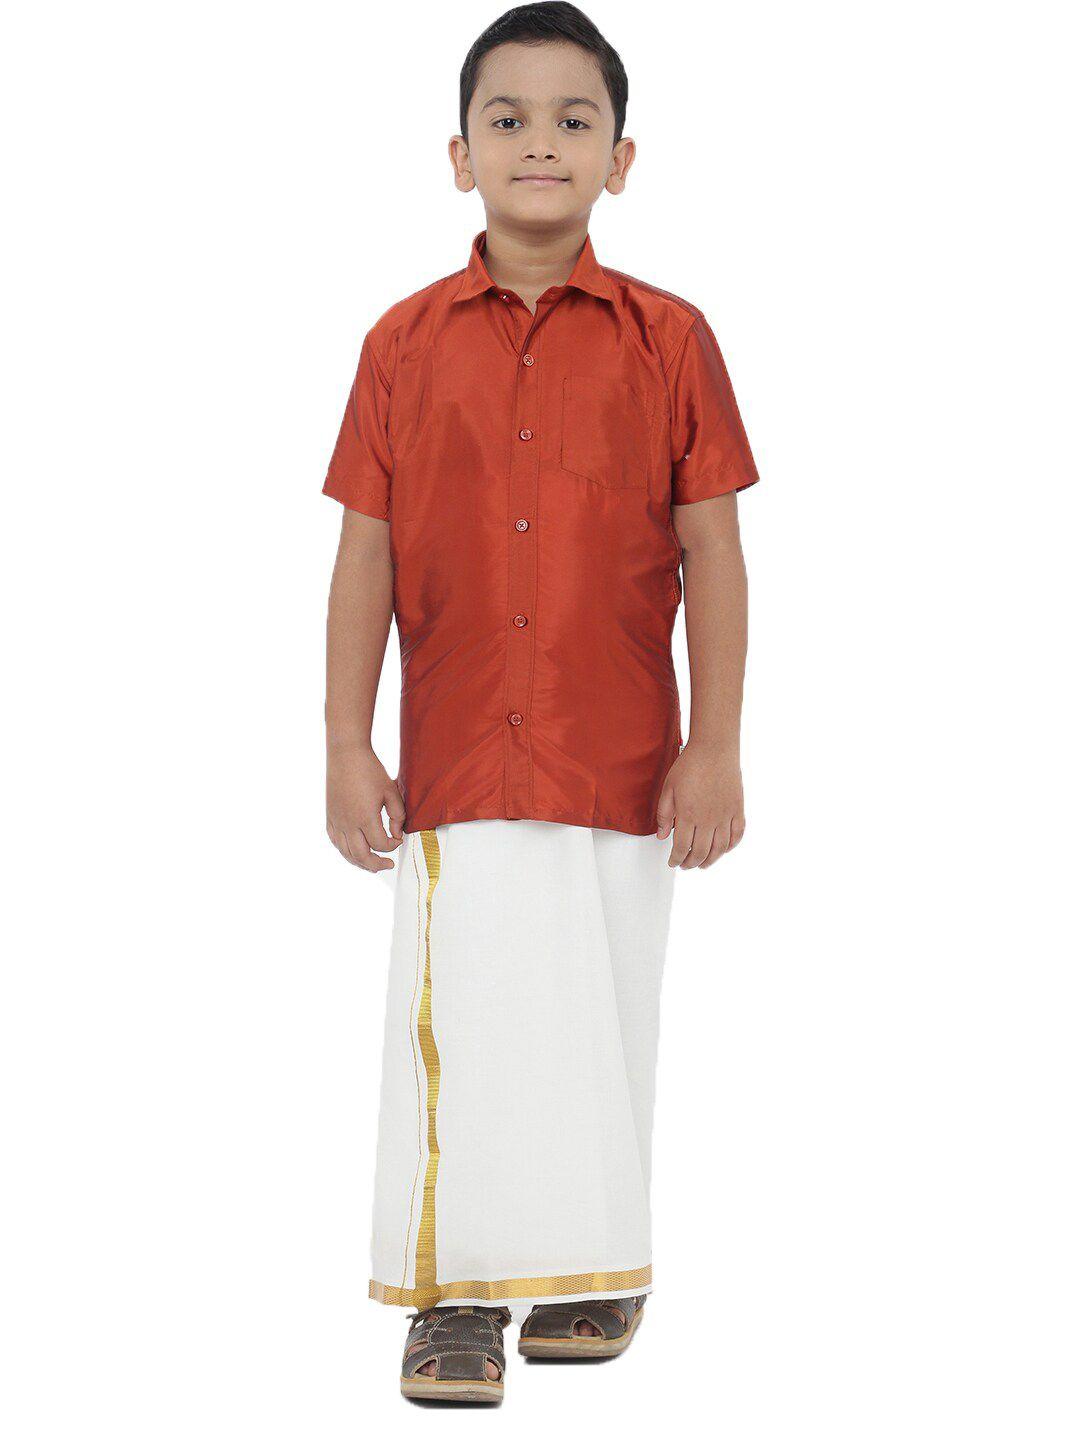 ramraj-boys-orange-polk-silk-ethnic-shirt-with-white-dhoti